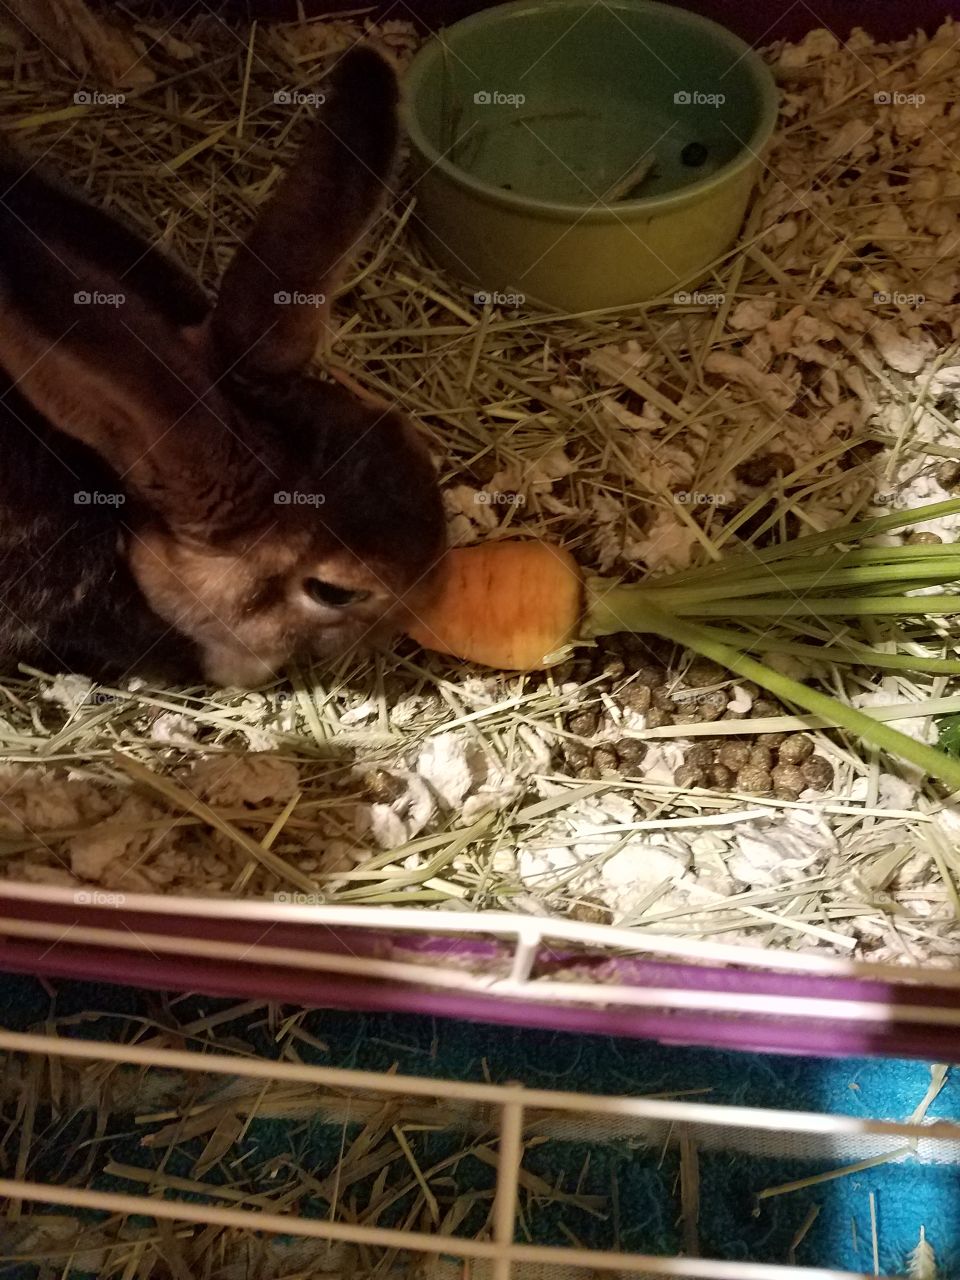 soft rabbit eating a carrot fresh garden carrot